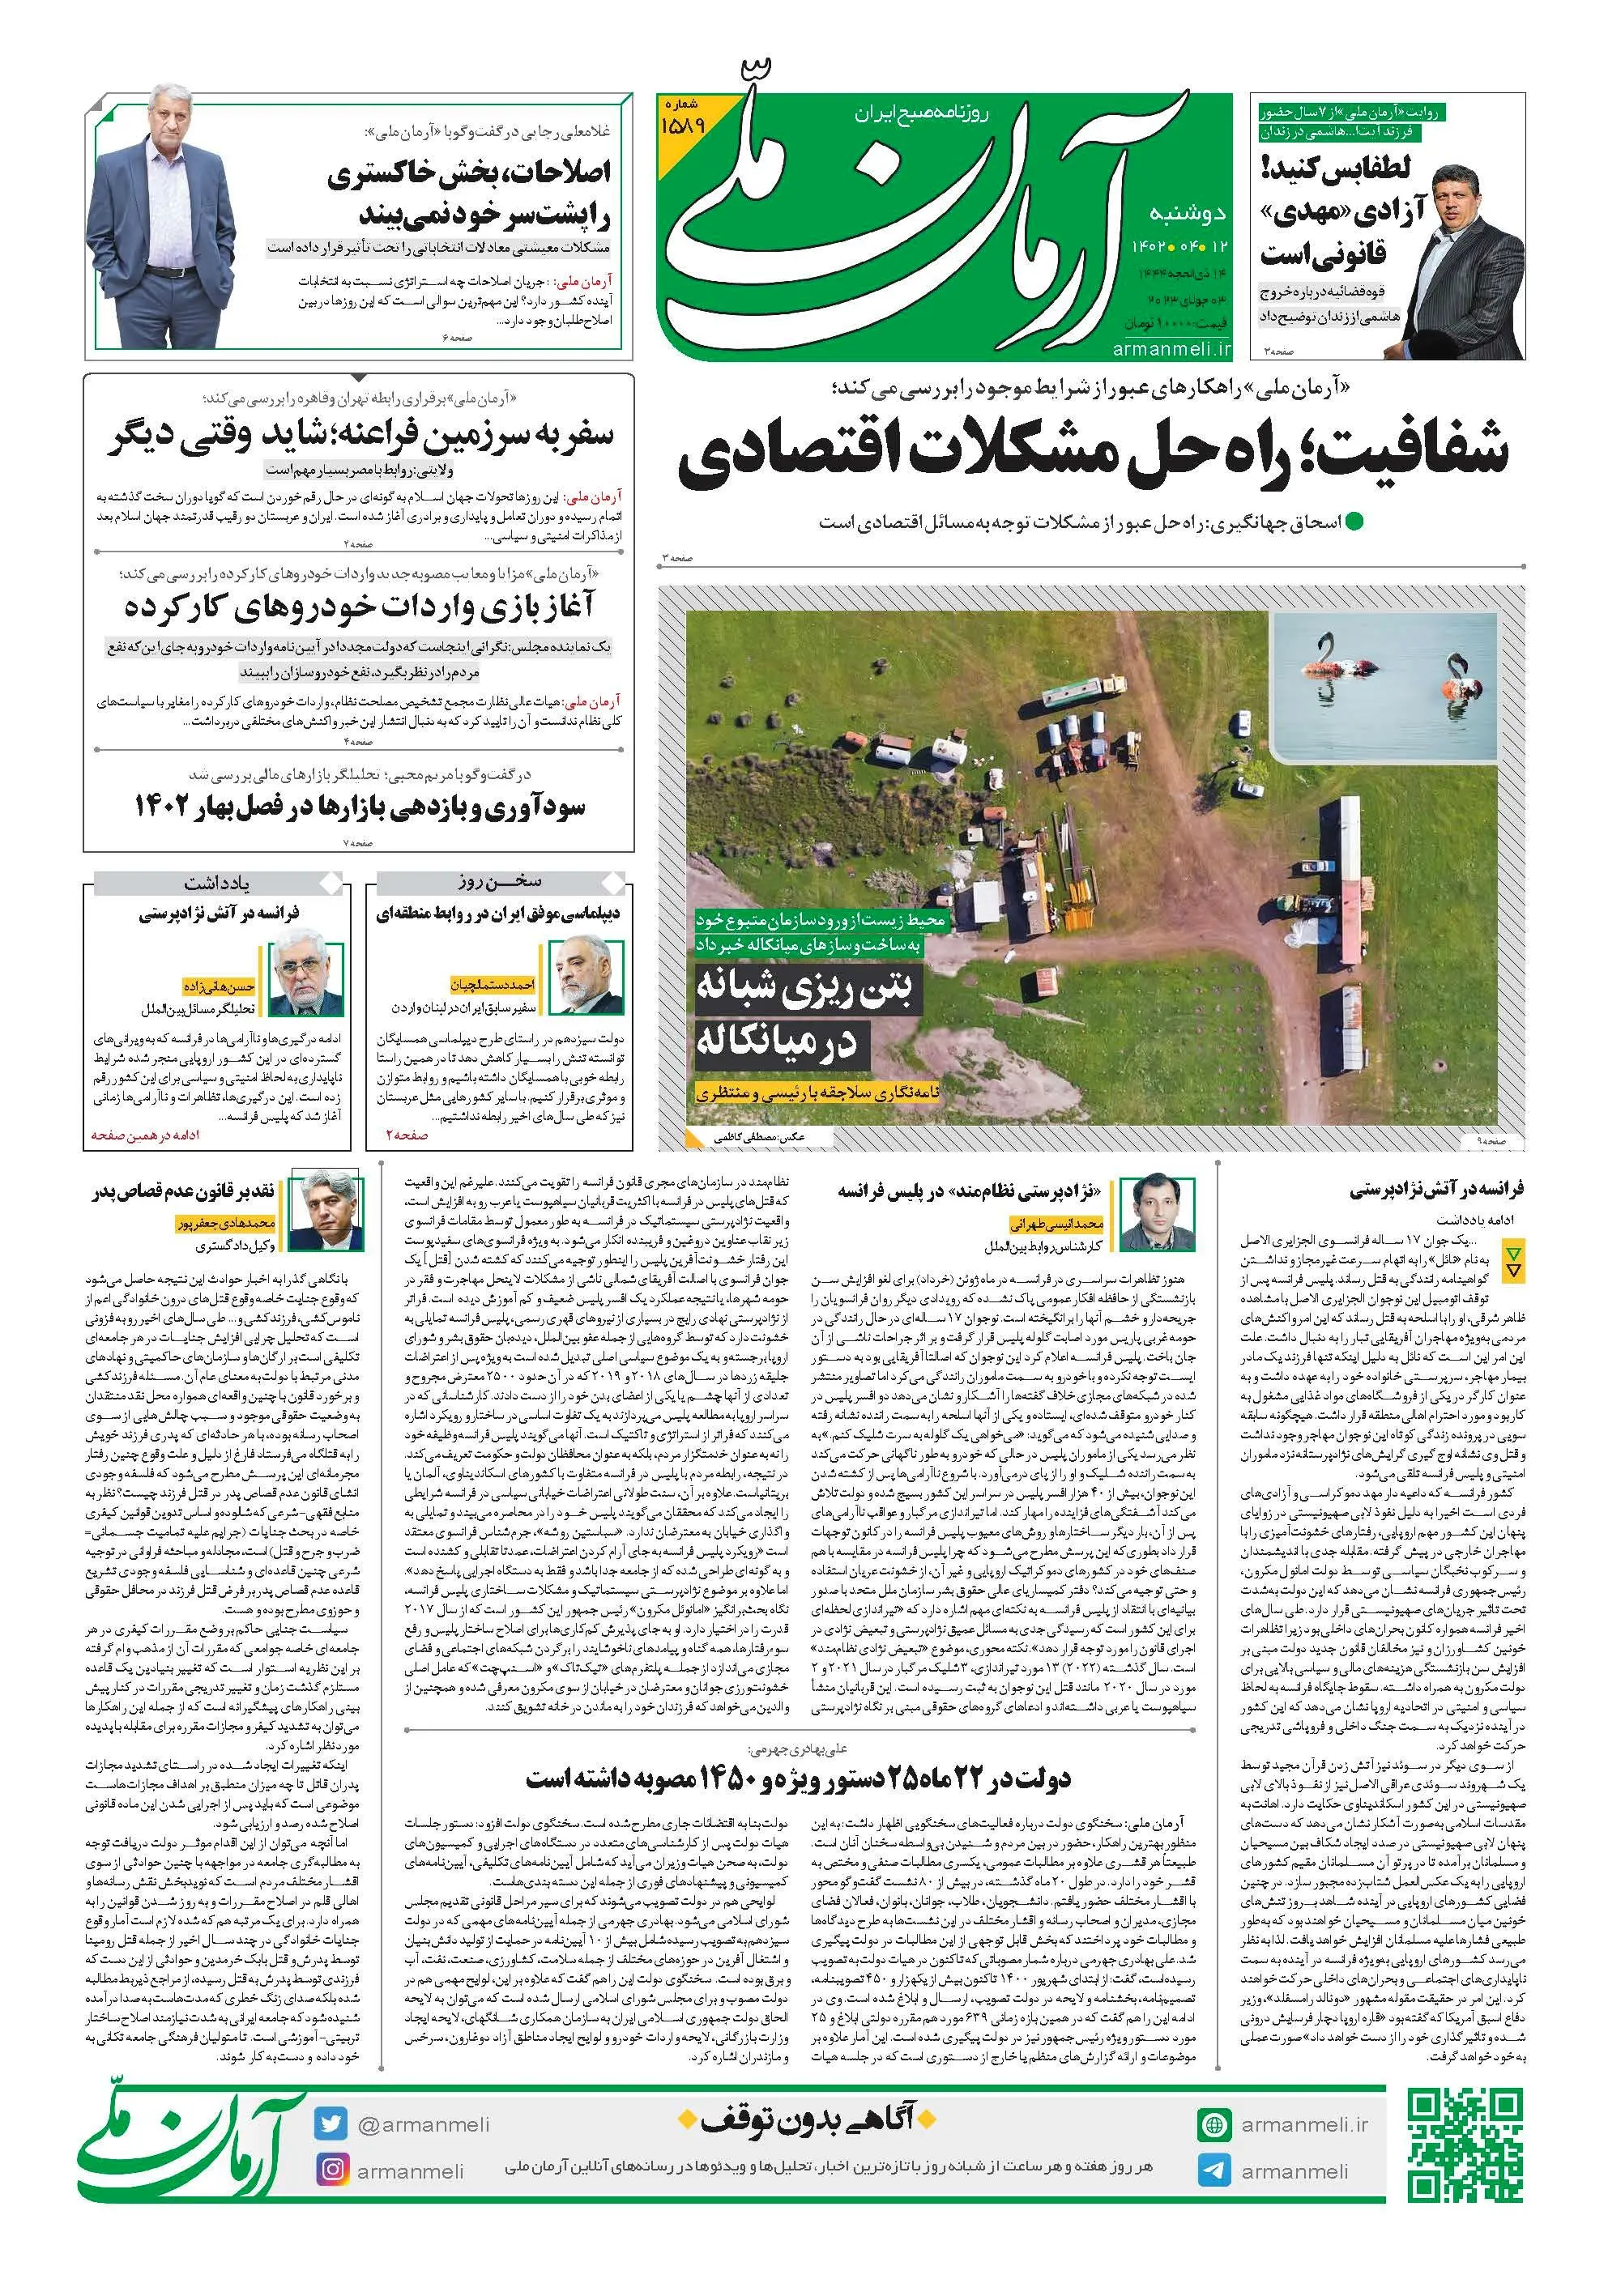 روزنامه آرمان ملی - دوشنبه 12 تیر - شماره 1588